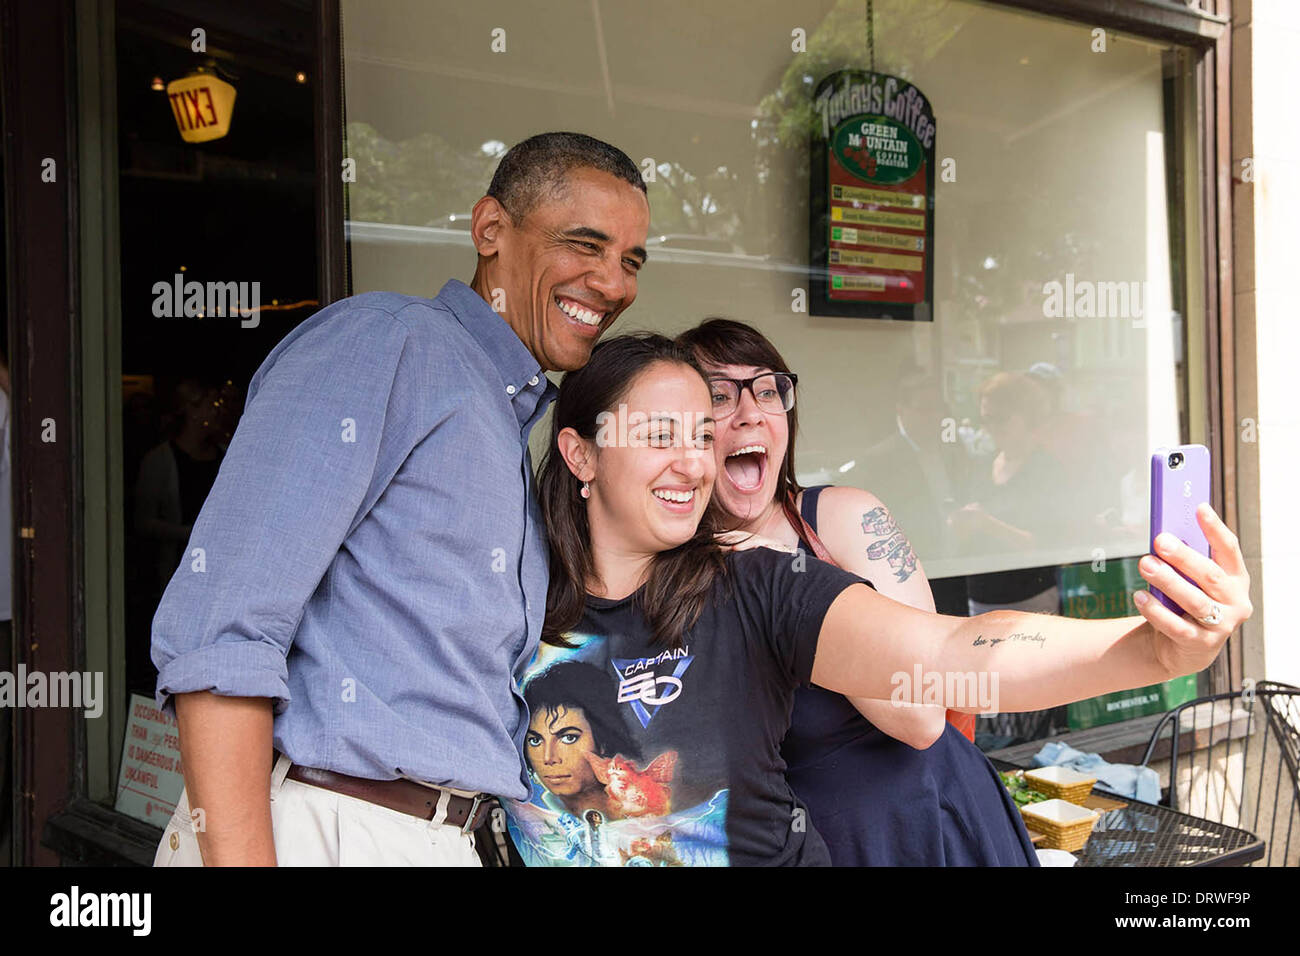 El presidente estadounidense, Barack Obama, posa para una fotografía en el Magnolia's Deli & Café durante el colegio asequibilidad bus tour el 22 de agosto de 2013 en Rochester, Nueva York. Foto de stock